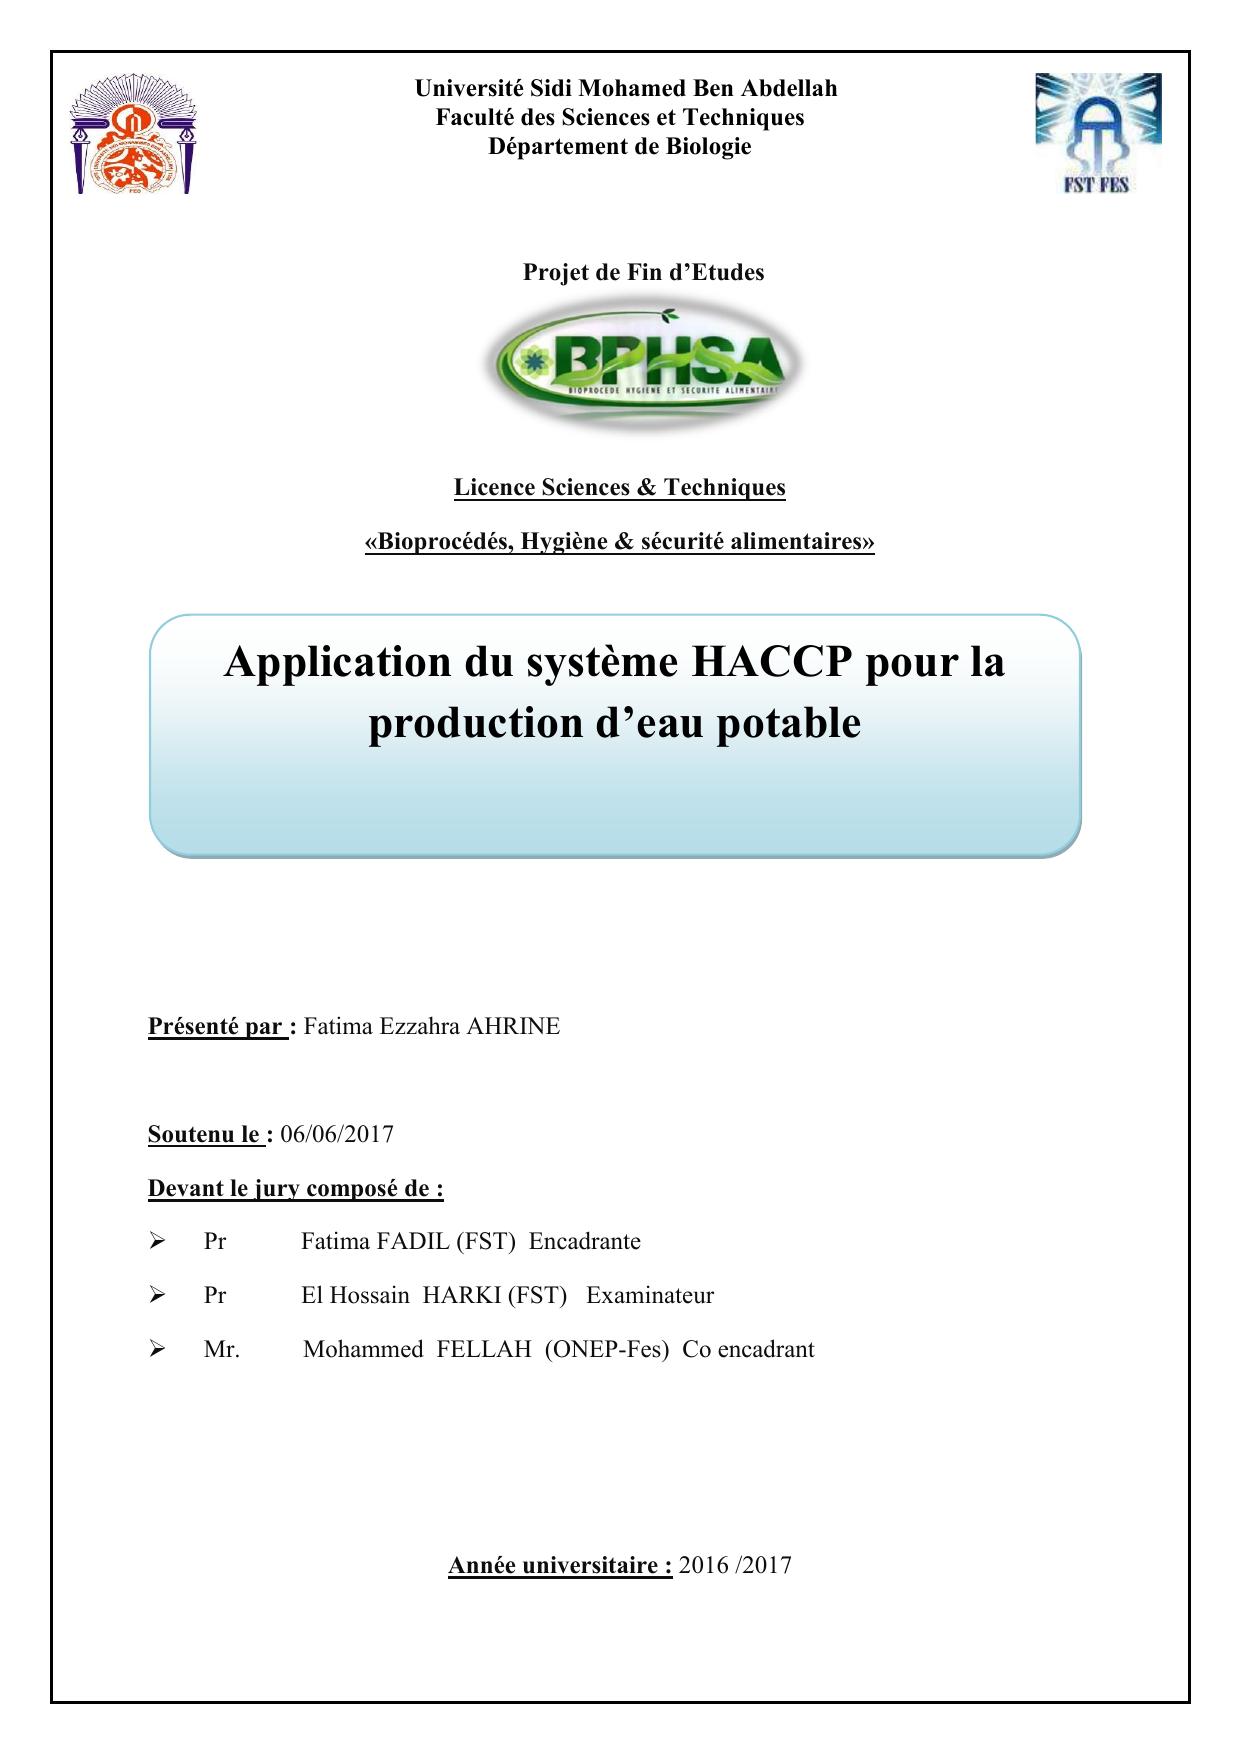 Application du système HACCP pour la production d’eau potable